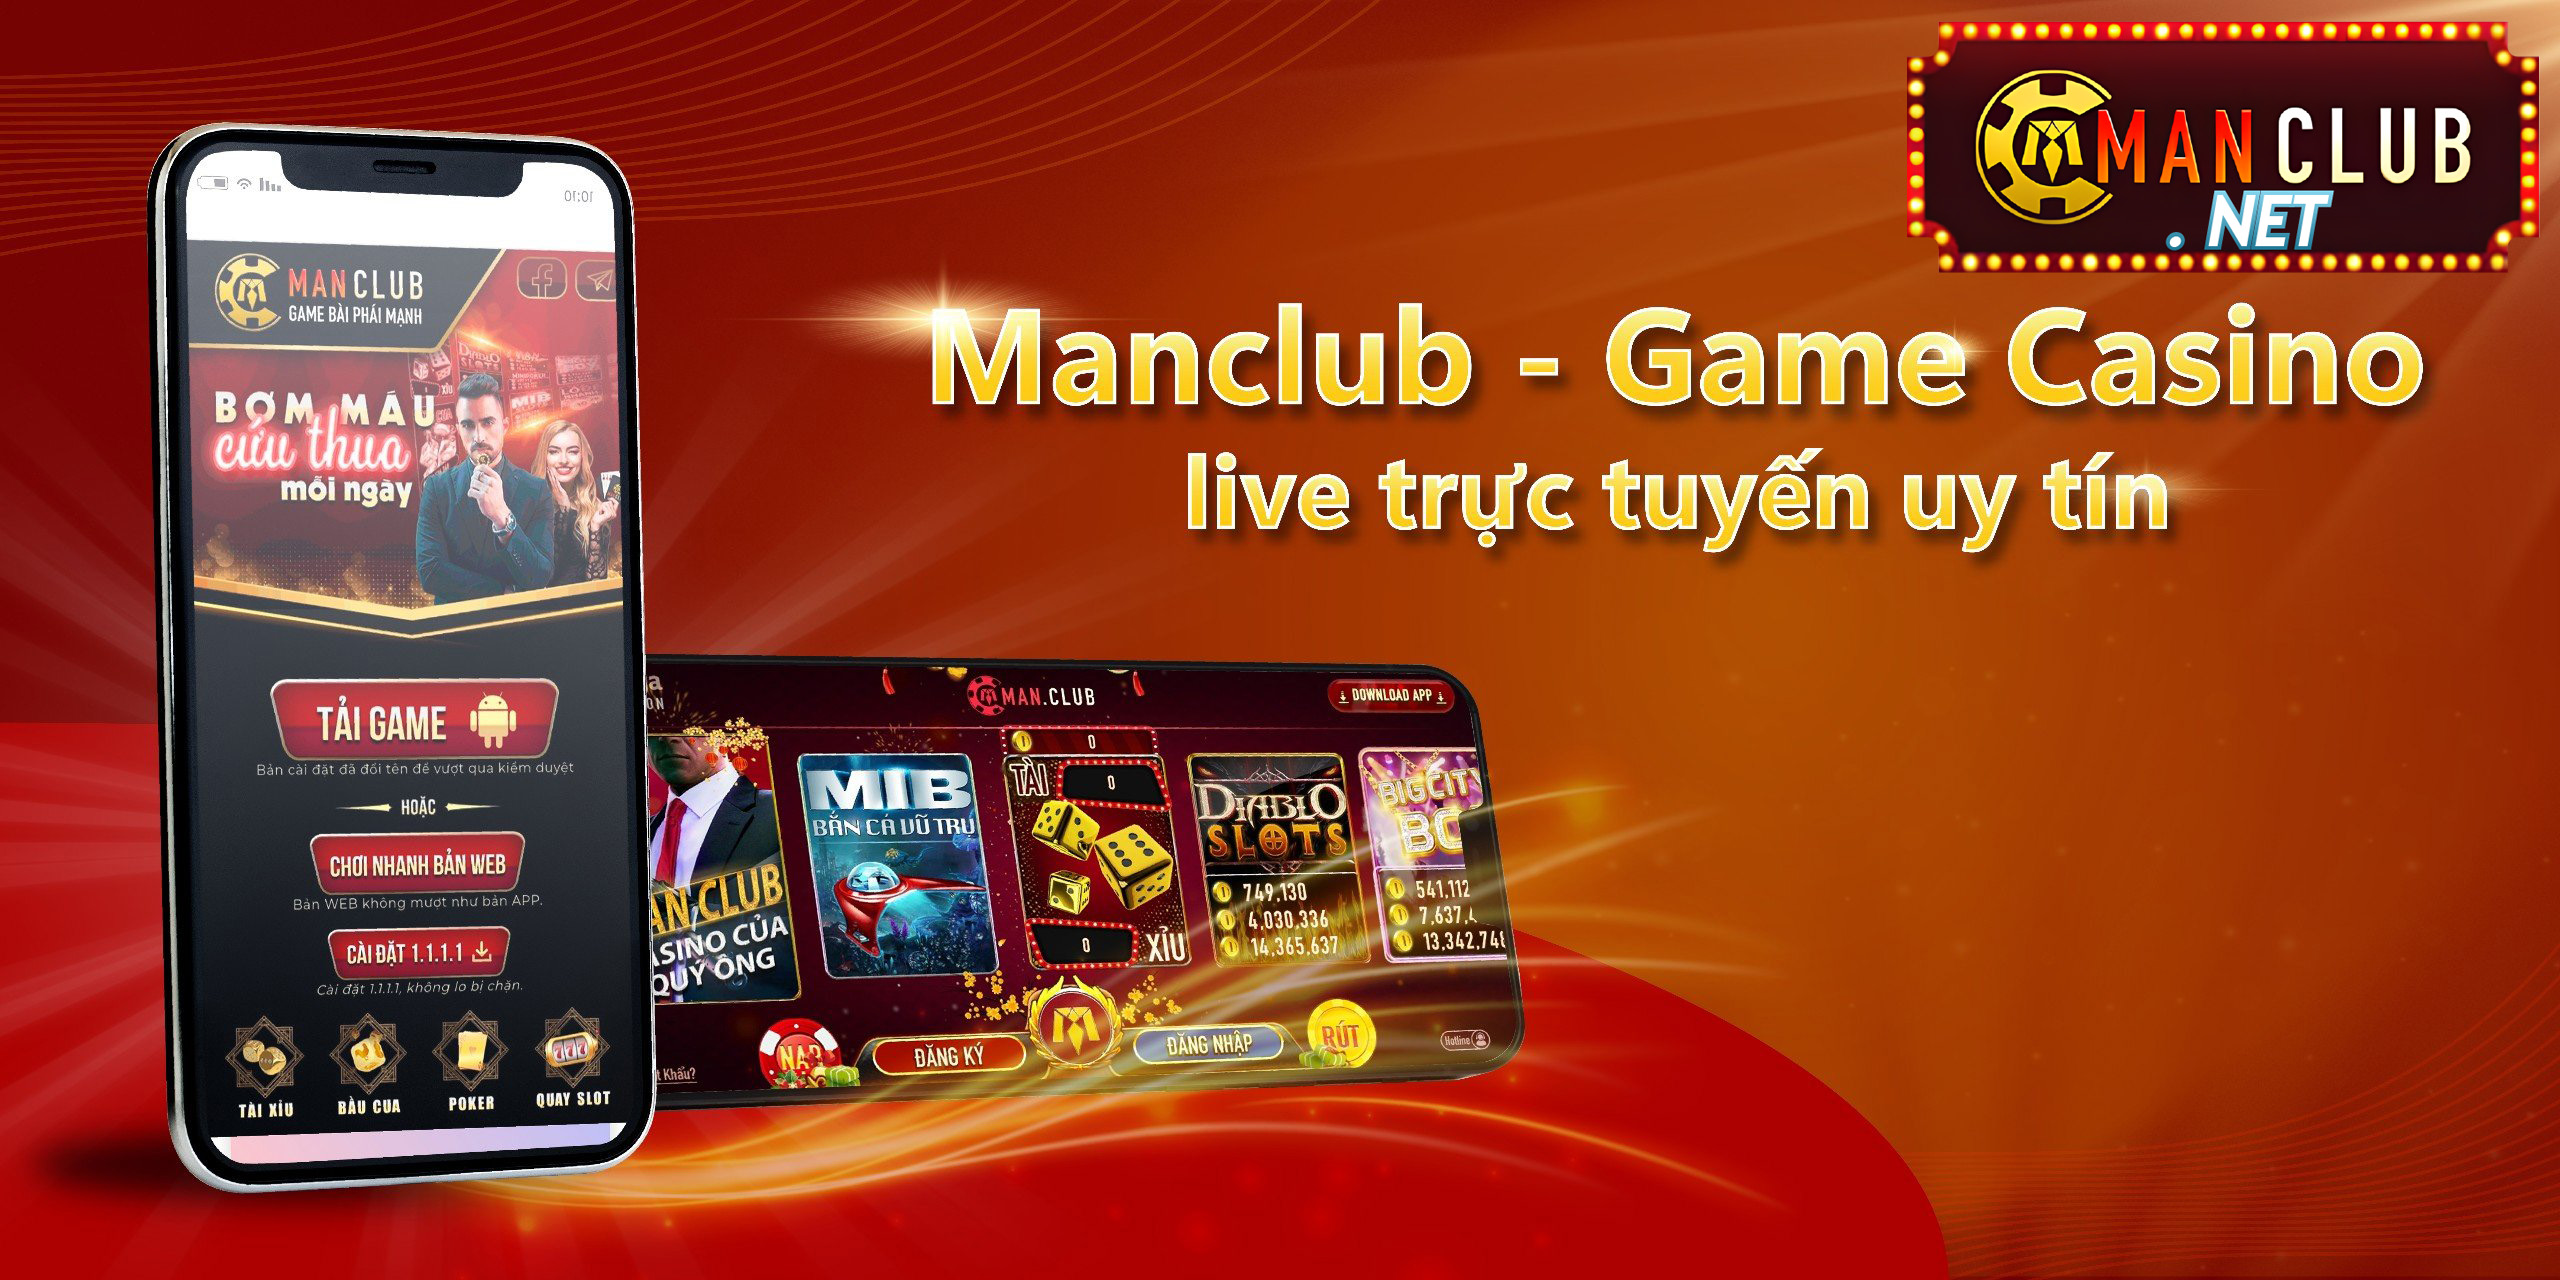 Manclub - game Casino live trực tuyến uy tín